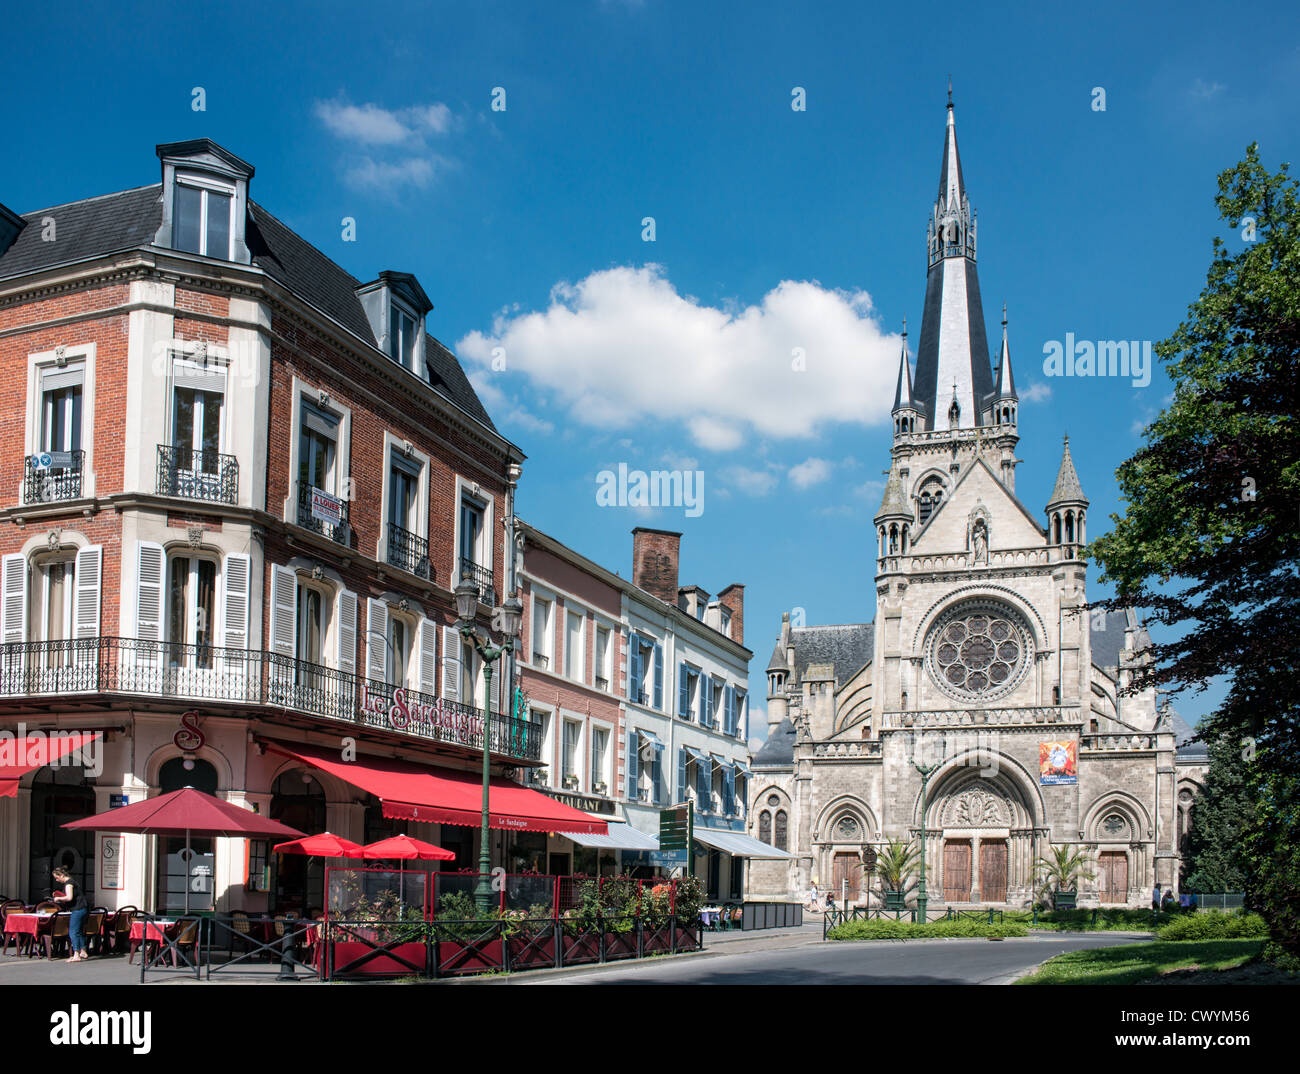 Le Sardaigne, ein Café und der Kirche von Notre Dame auf dem Marktplatz von Epernay, Champagne, Frankreich Stockfoto